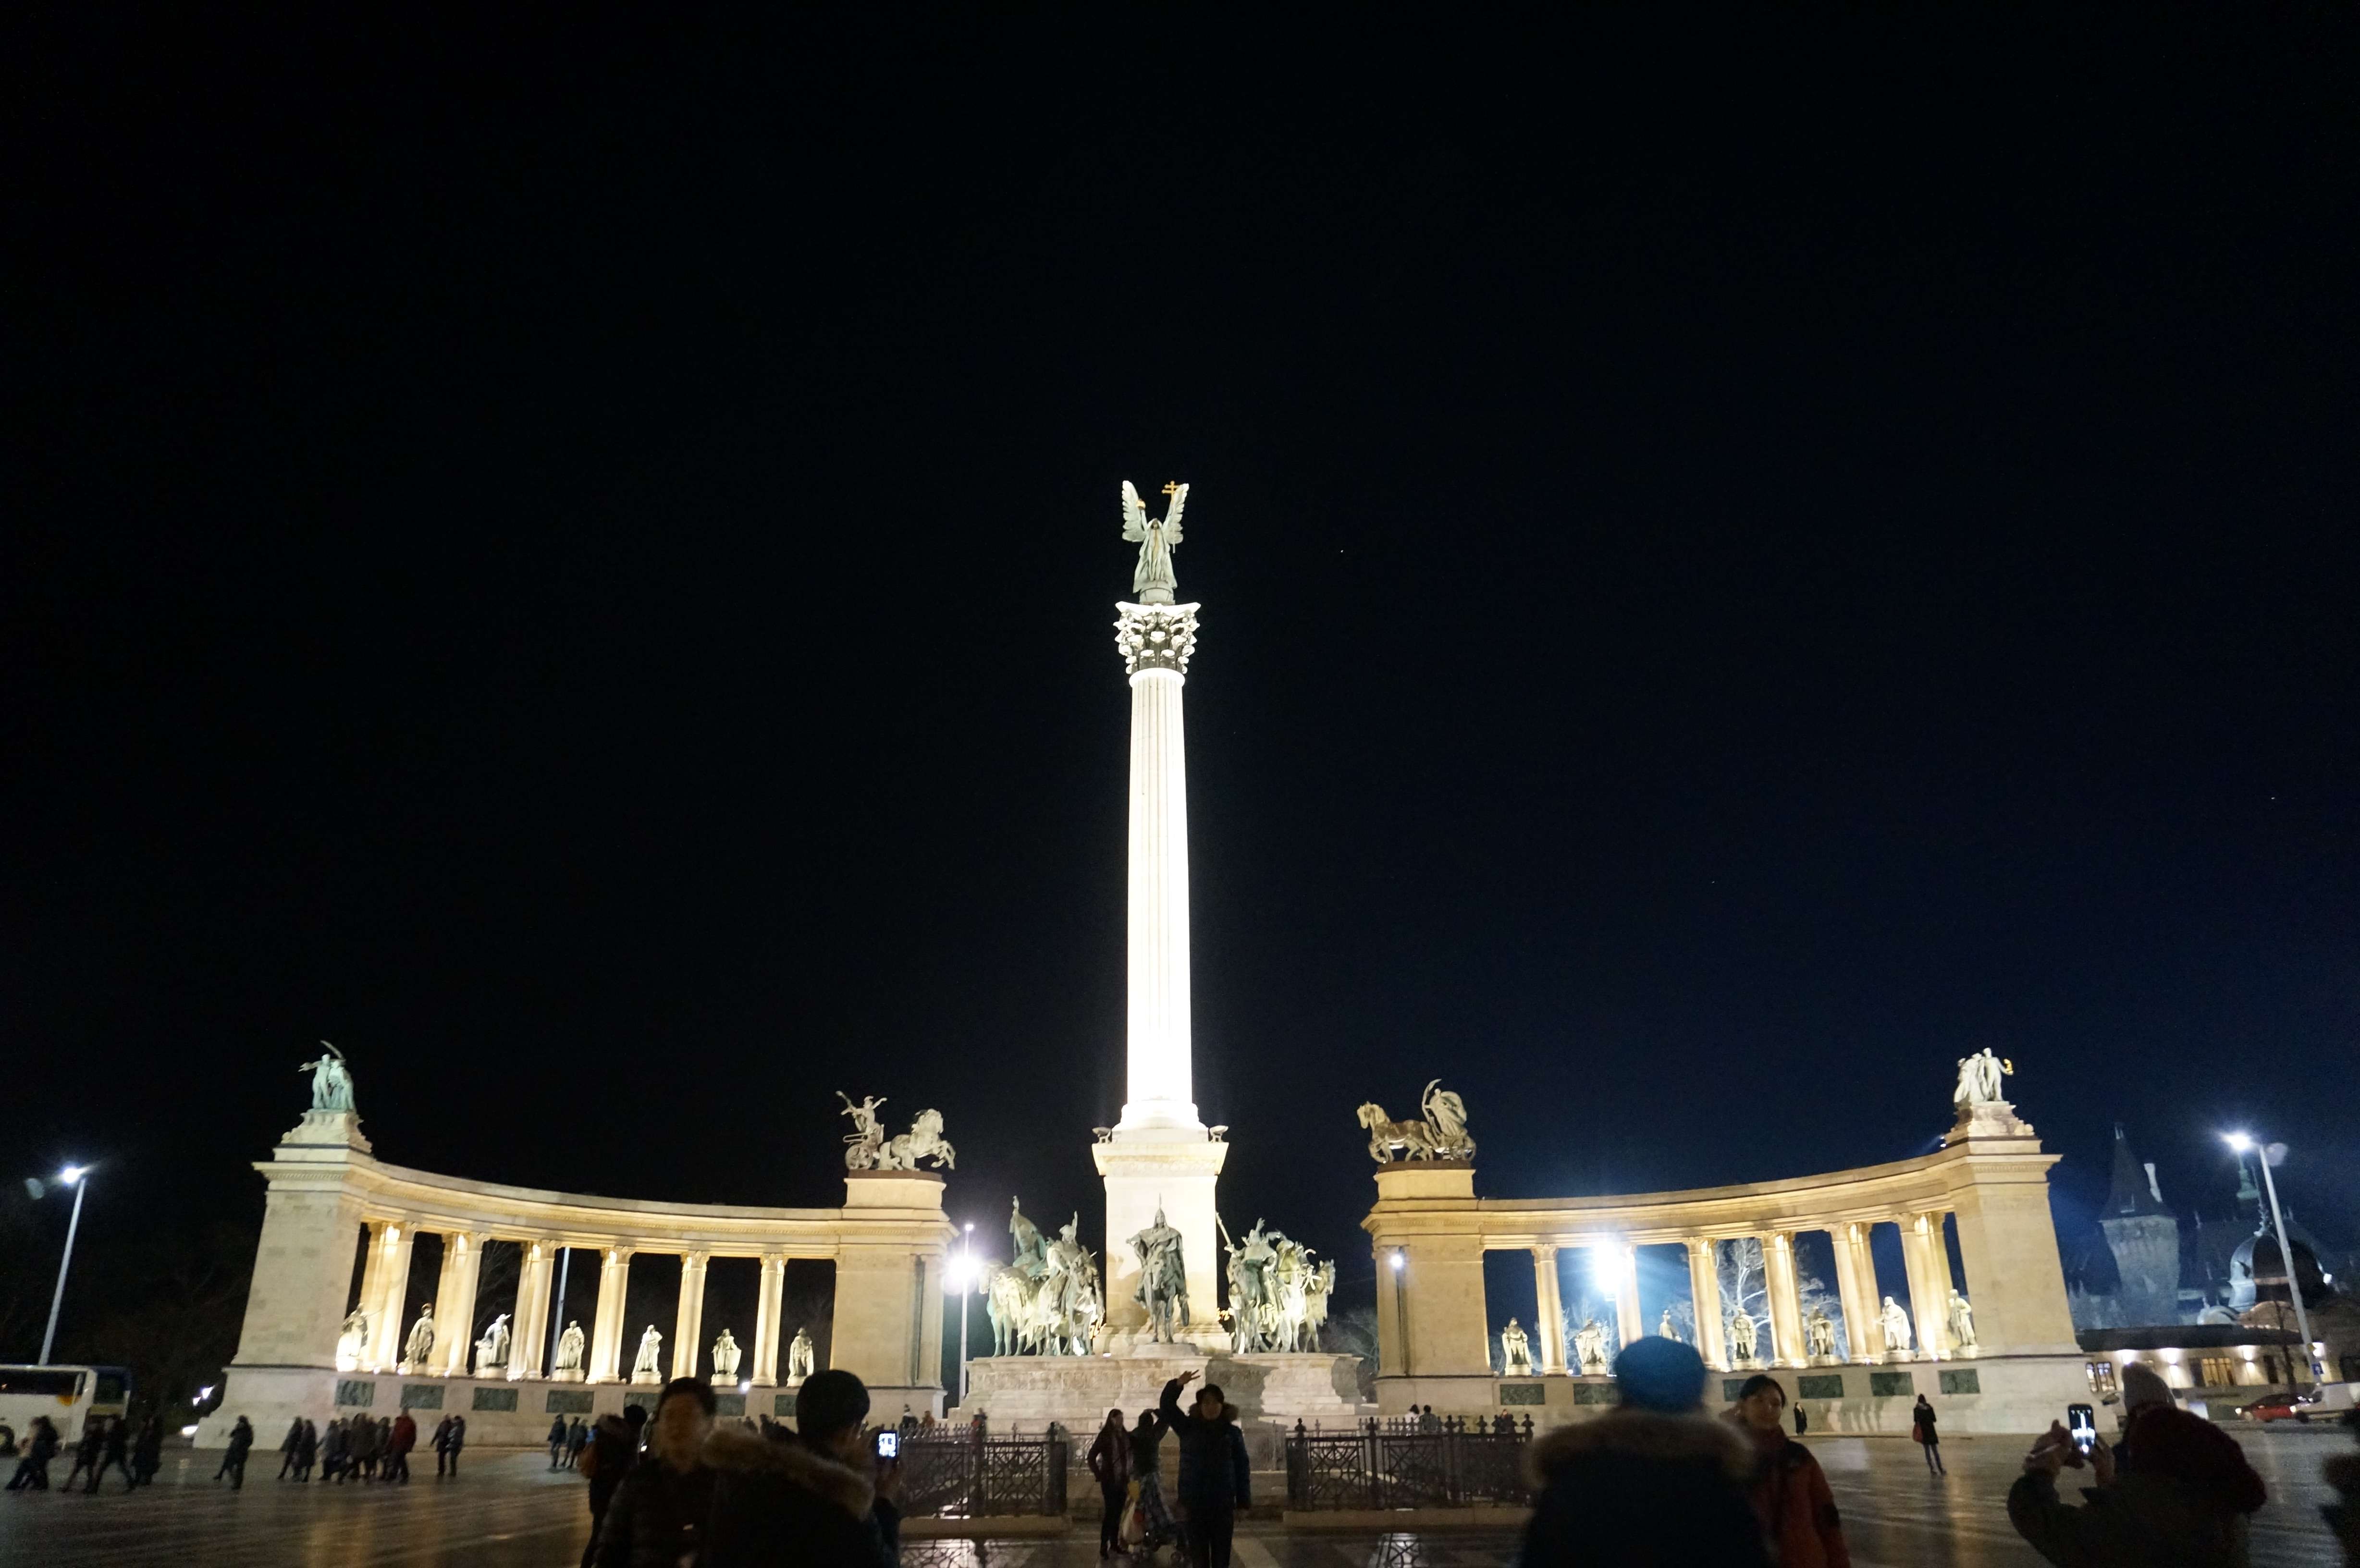 Día 5 - Budapest: Mercado y Baños Szechényi - Praga, Viena y Budapest en 1 semana: Diciembre de luces e historia (4)